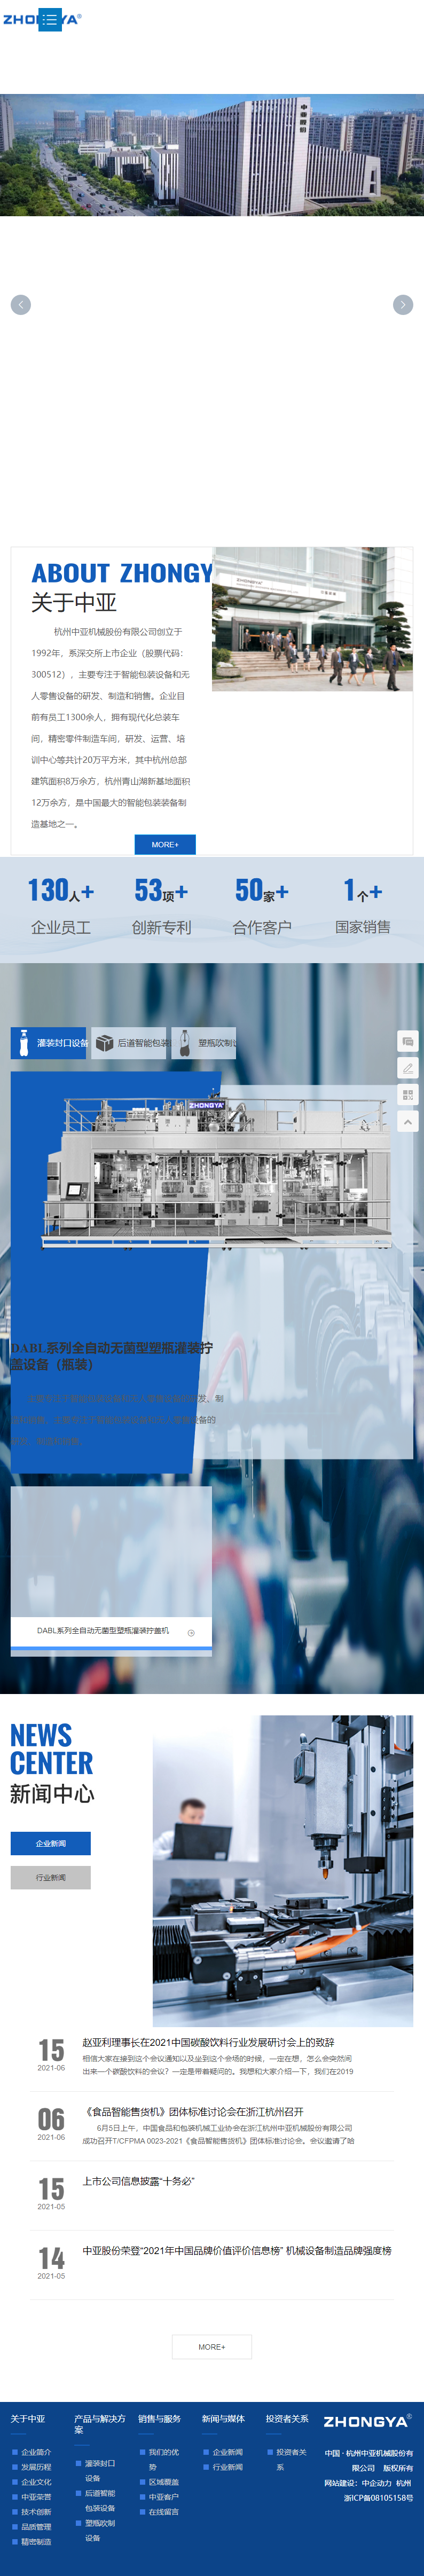 杭州中亚机械股份有限公司网站案例